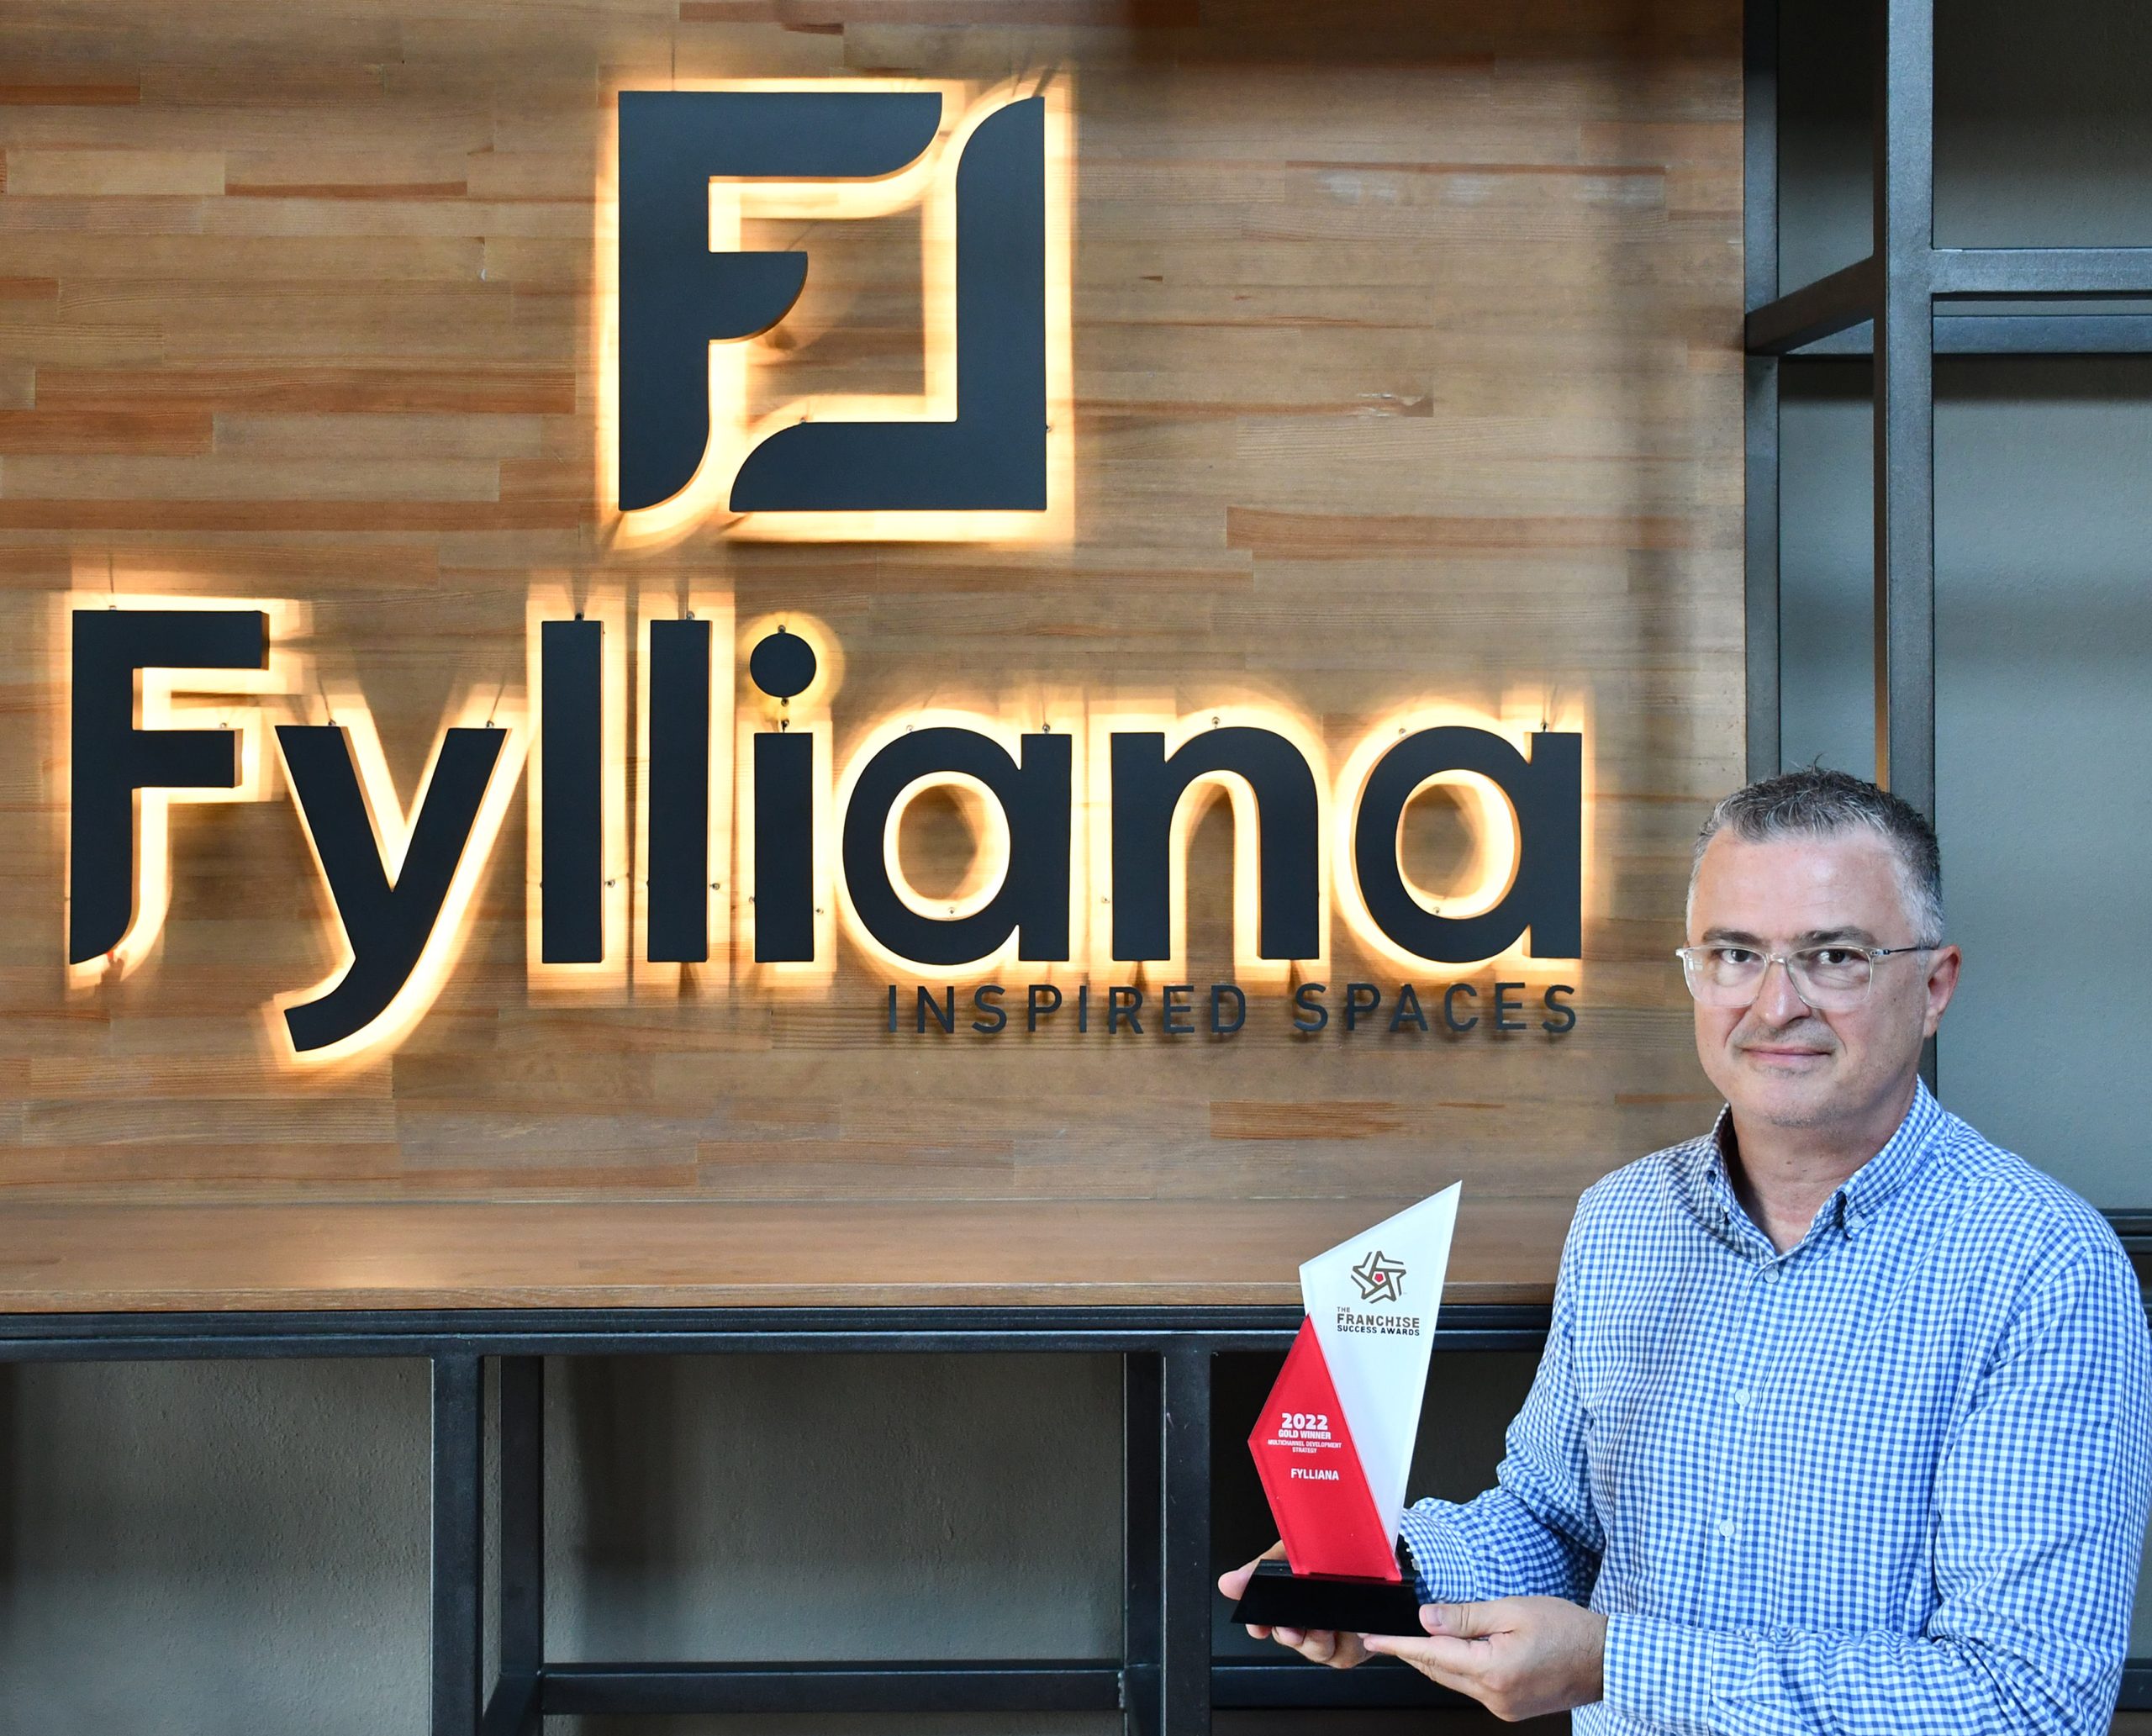 “Η ανταγωνιστικότητα και η αυξανόμενη προσφορά προϊόντων αποτελούσαν πάντα πρόκληση για τη Fylliana”.